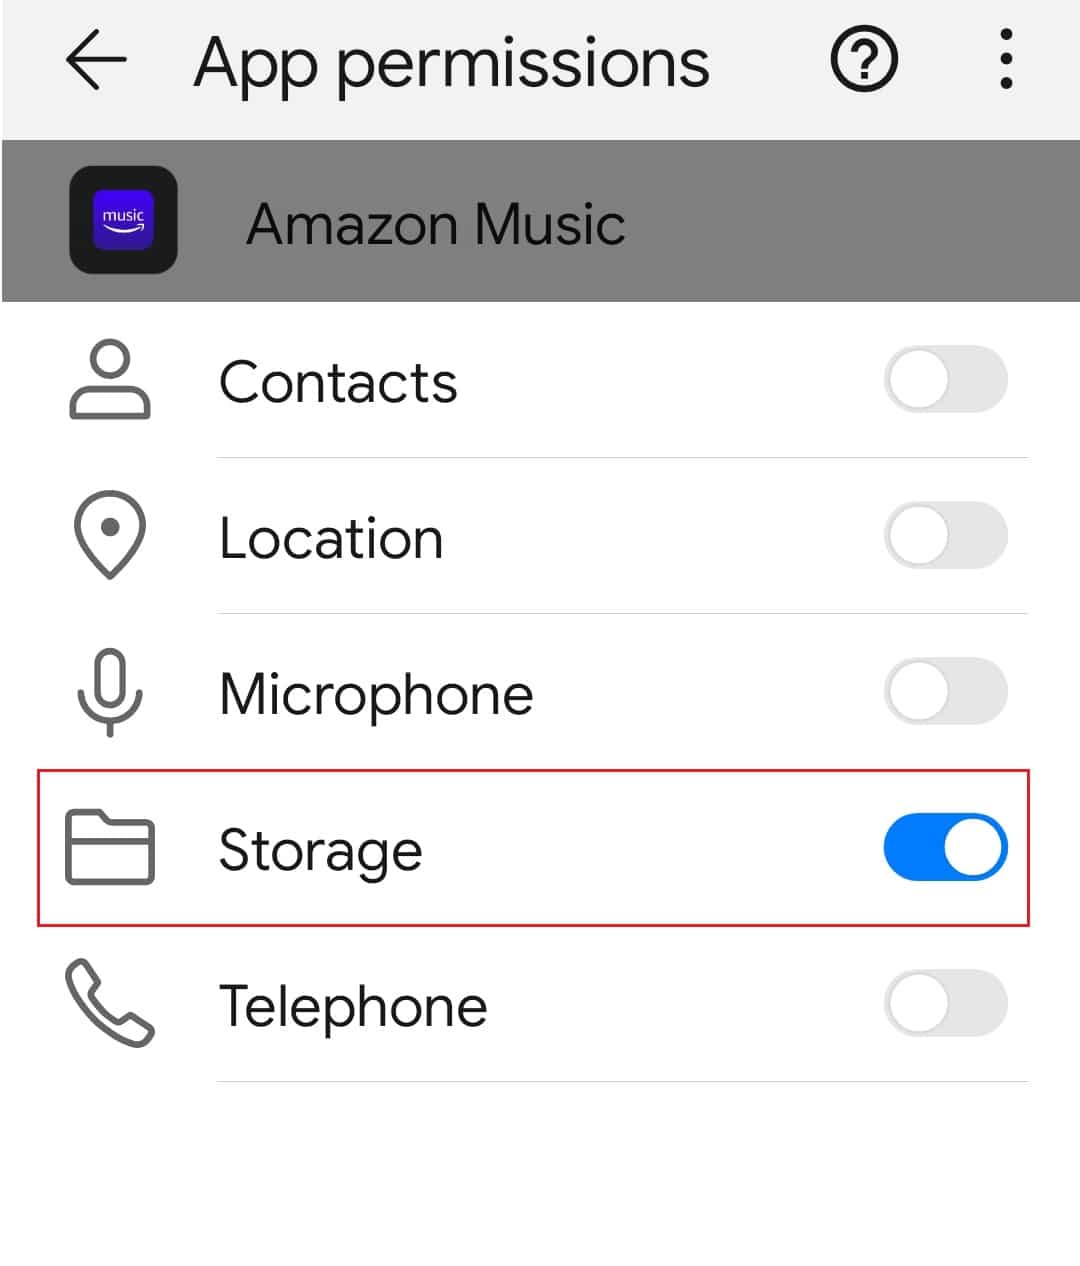 ativar a permissão de armazenamento no Amazon Music App